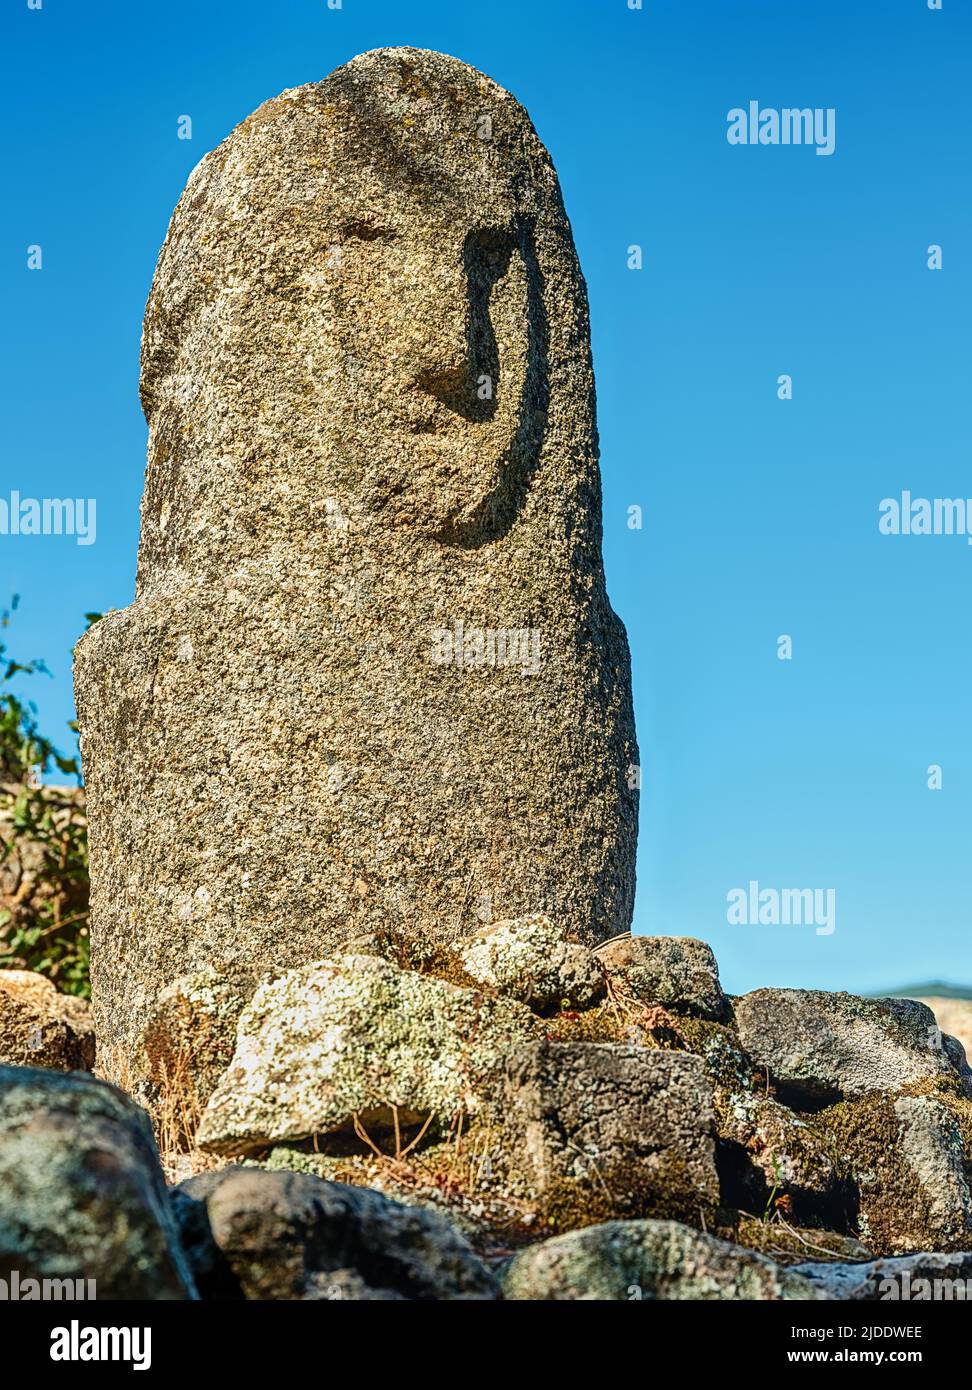 Une des sculptures en pierre du mégalith située à l'extérieur dans la région de Filitosa en Corse. Banque D'Images